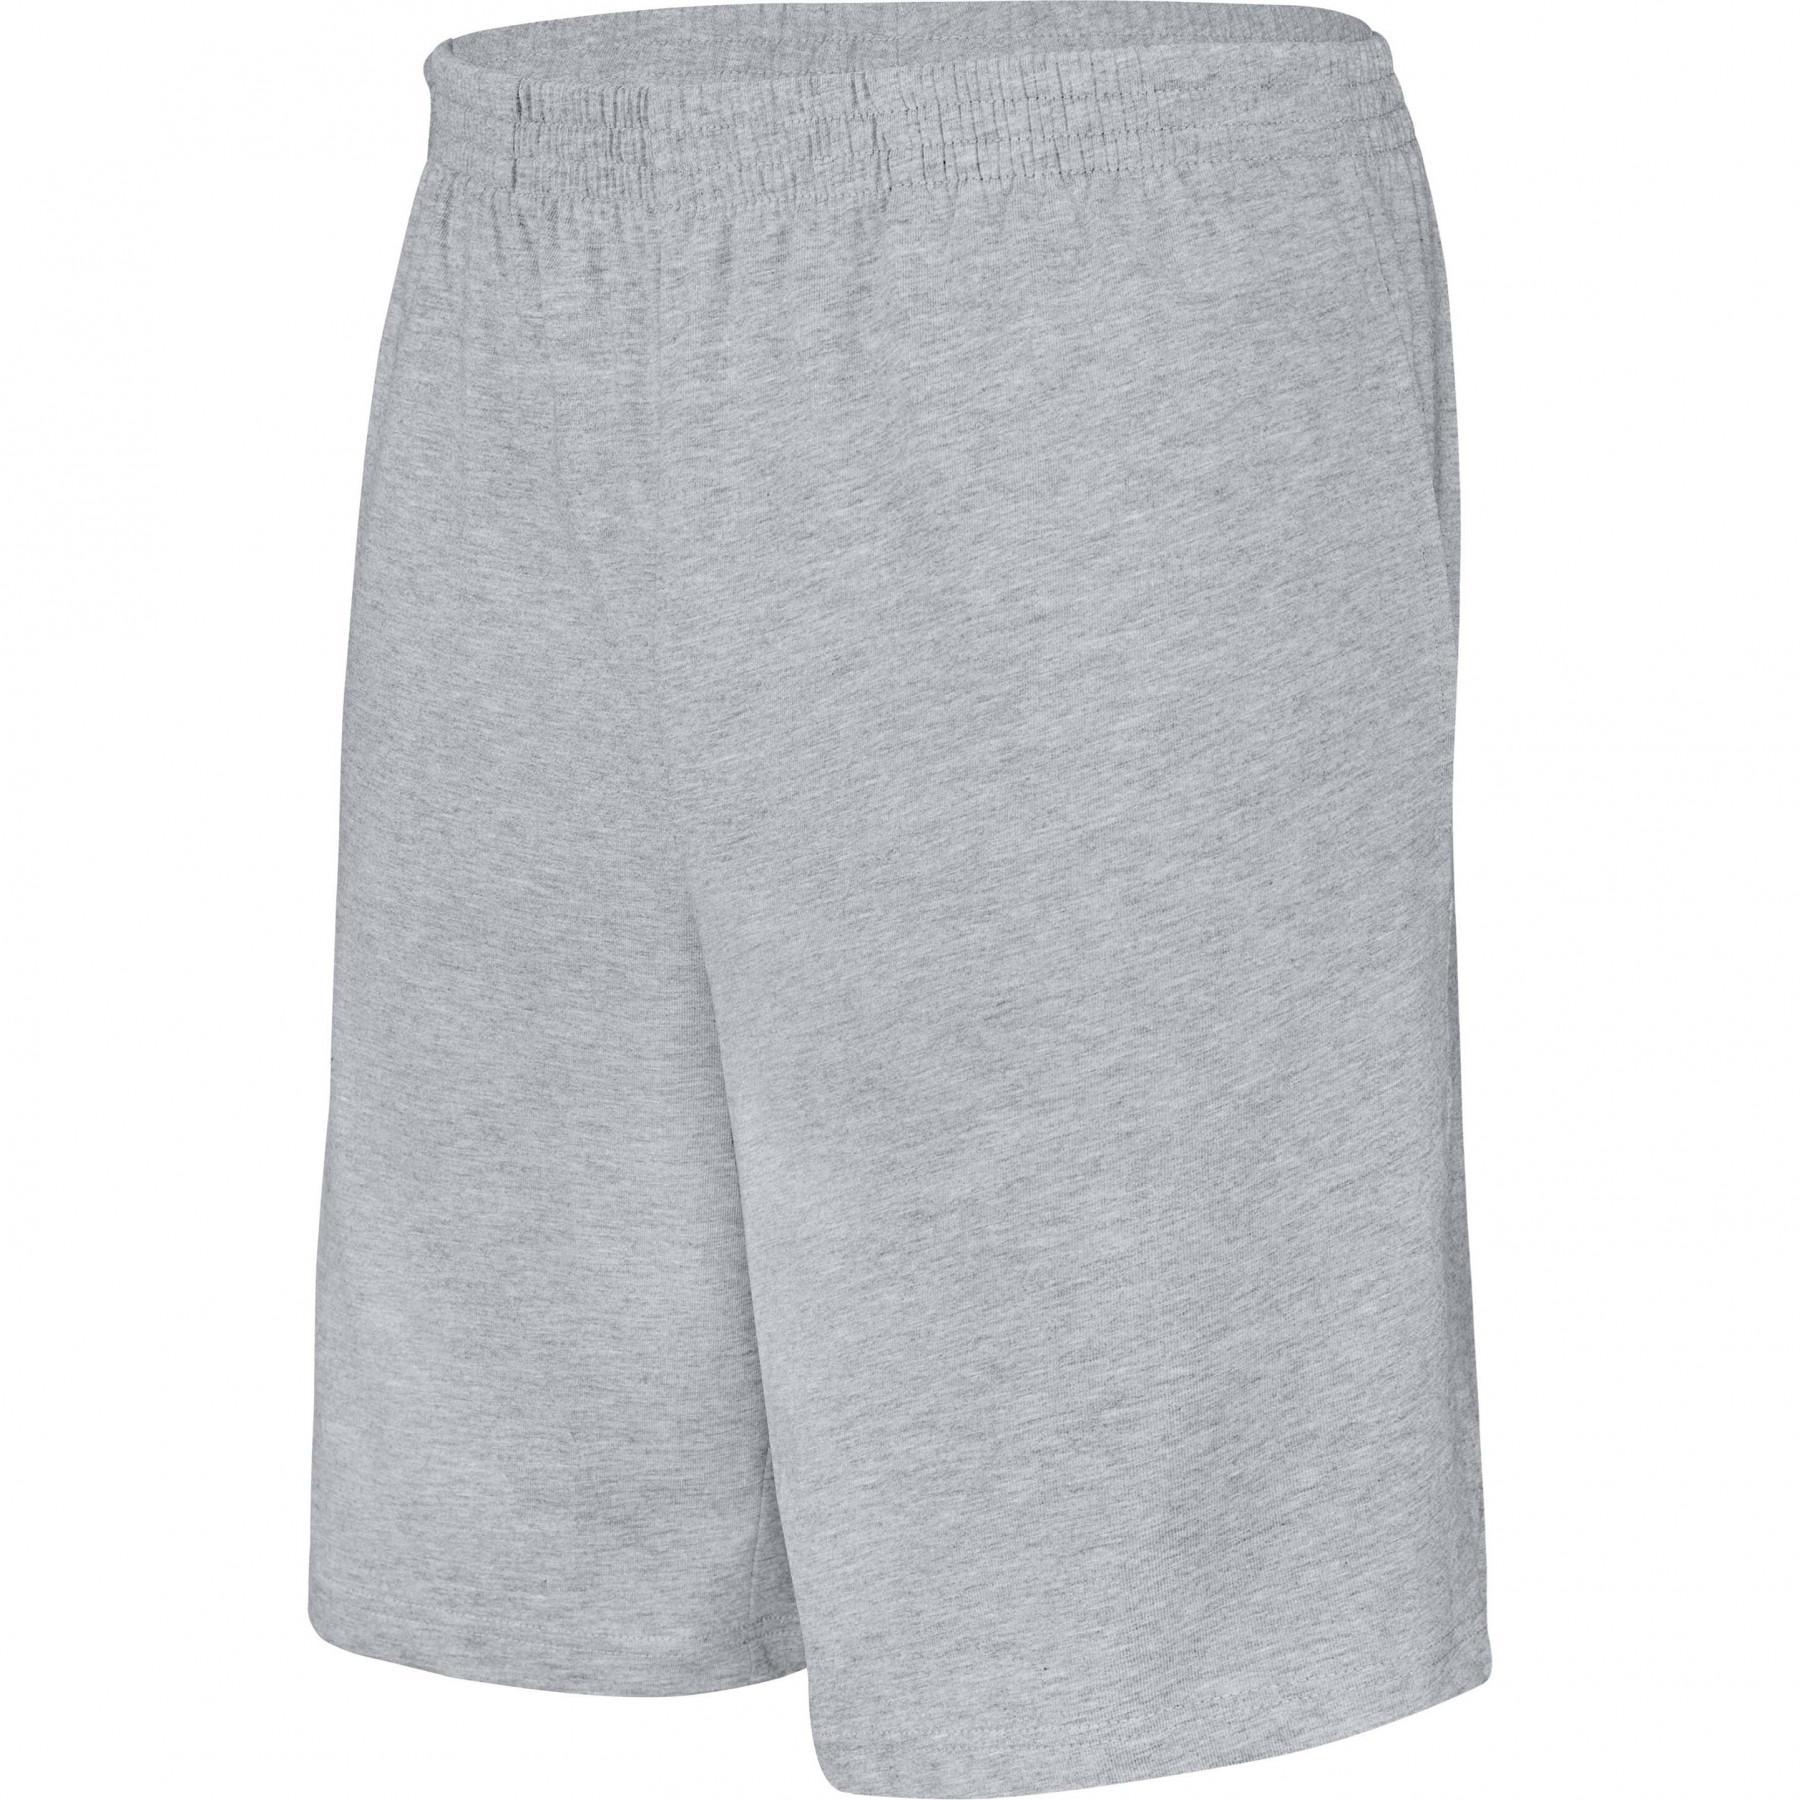 Pantalón corto niños Jersey Proact Sport